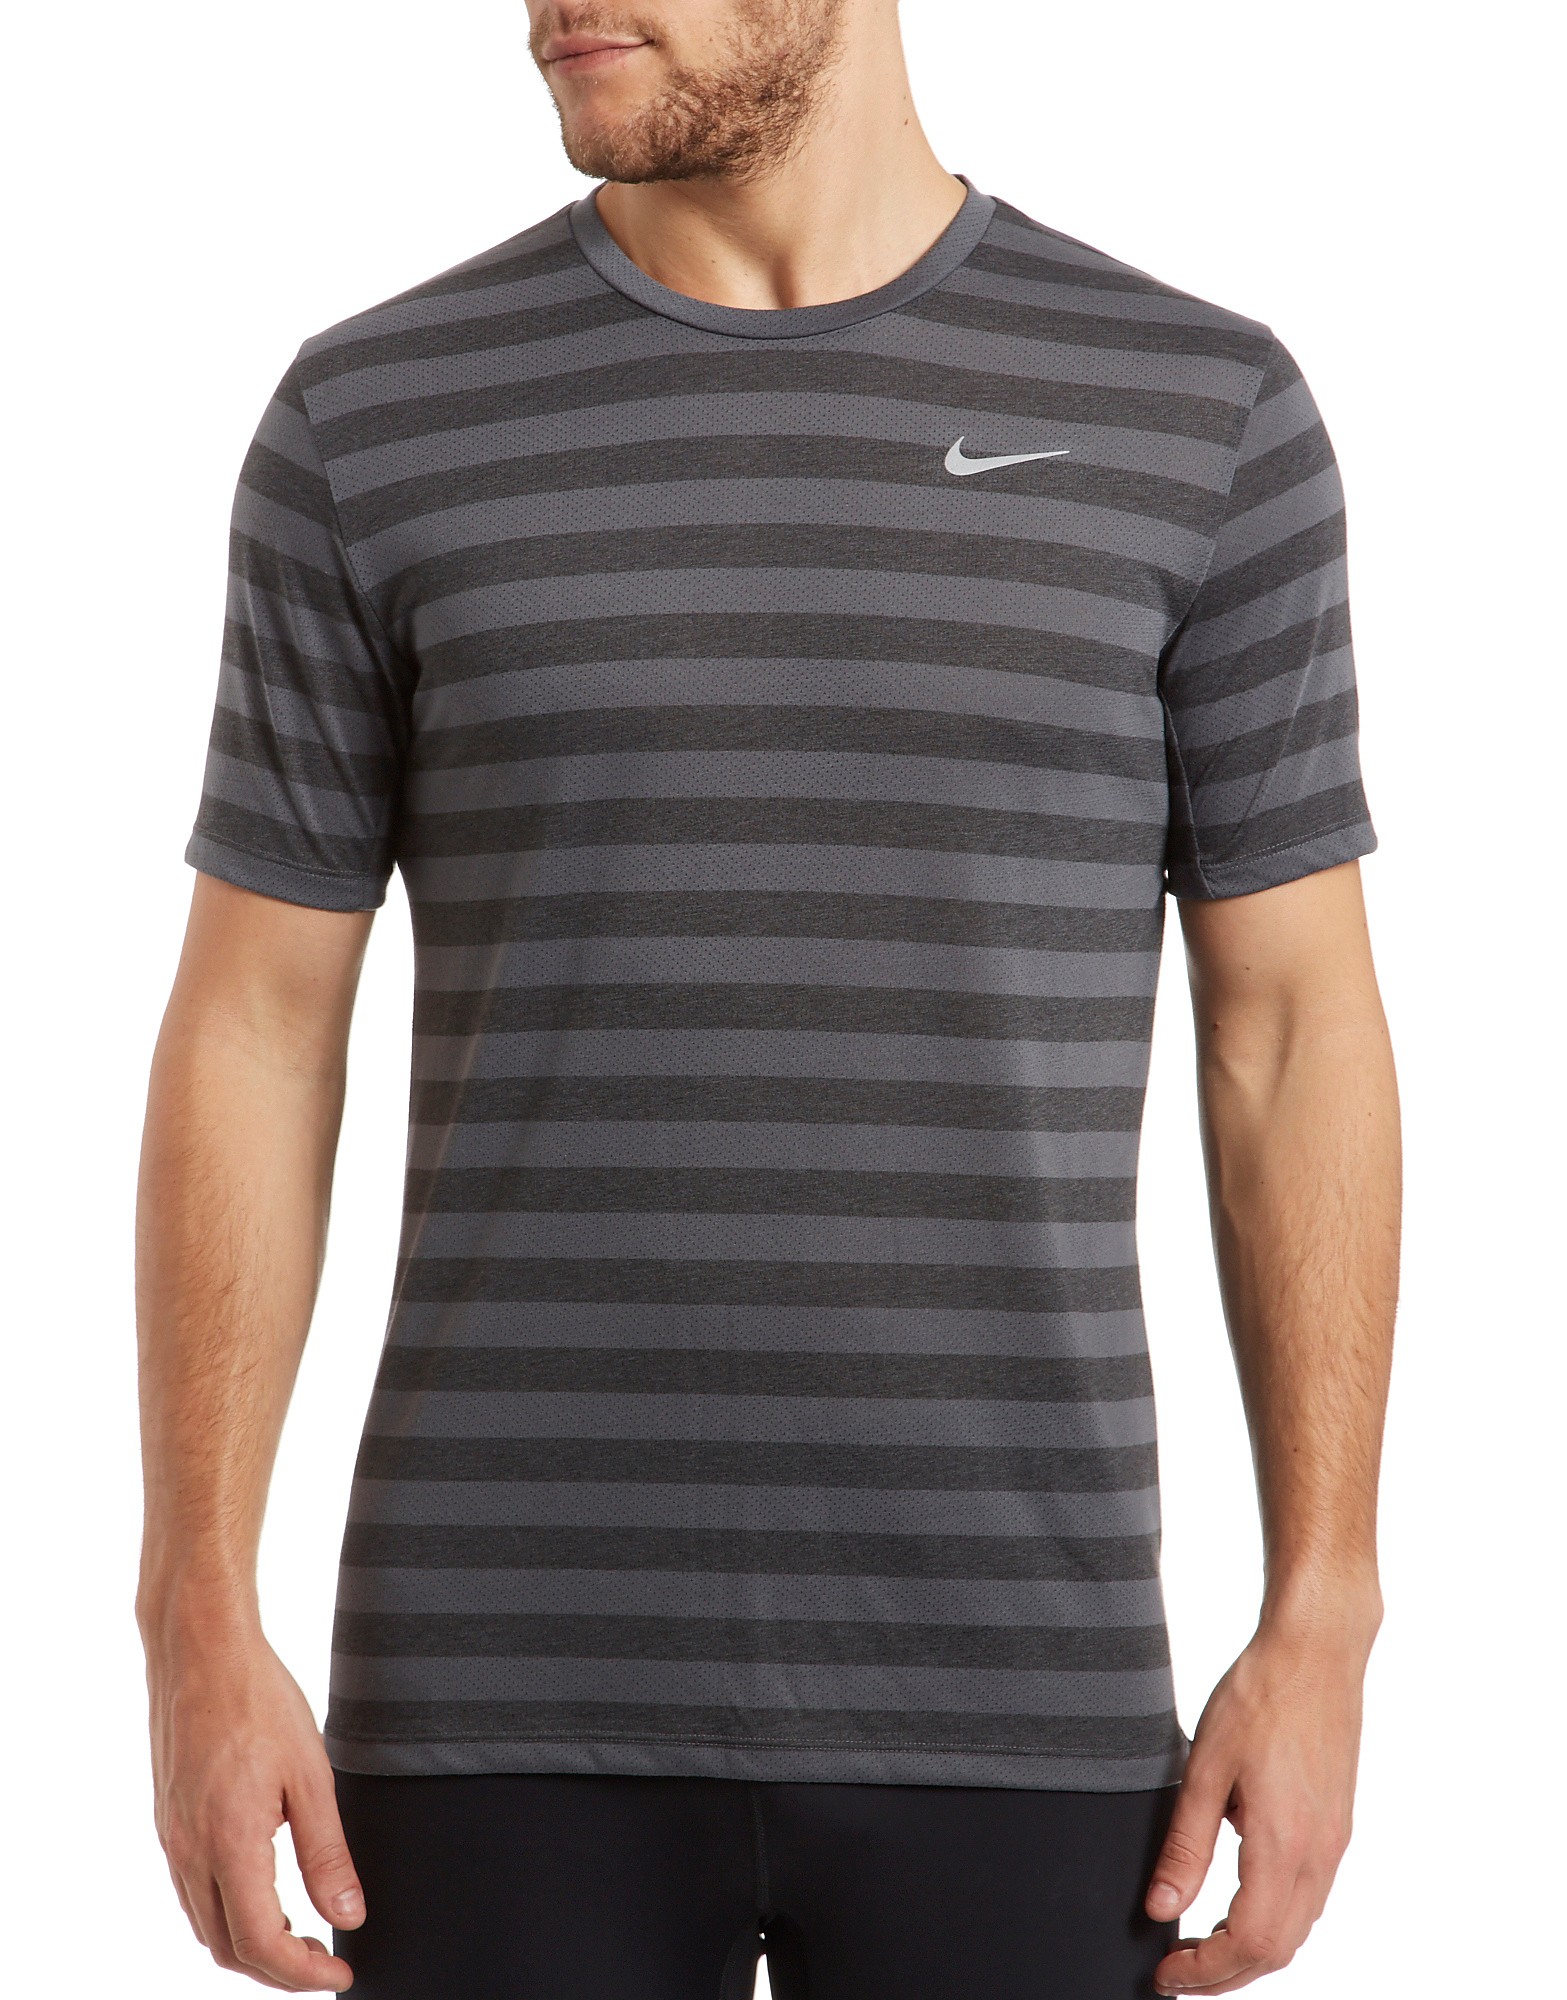 Nike Dri-fit Tail Wind Stripe T-Shirt